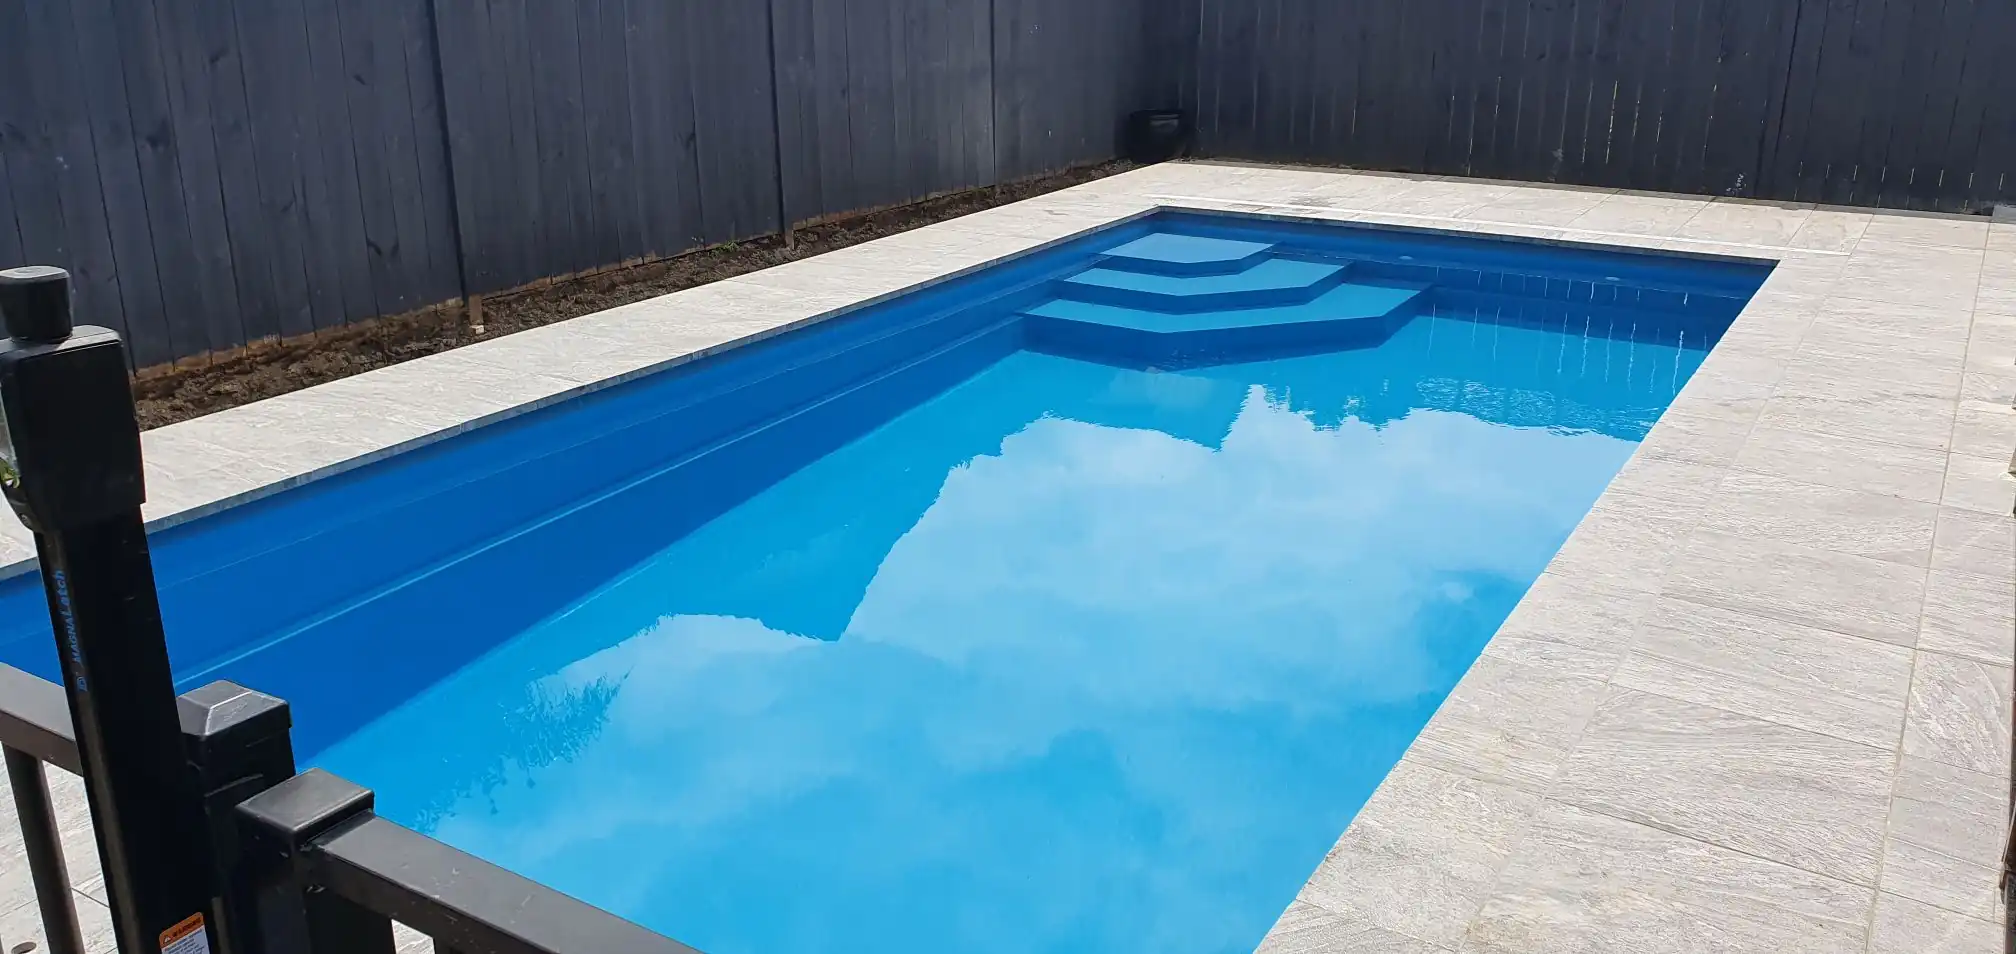 8 meter inground fibreglass swimming pool